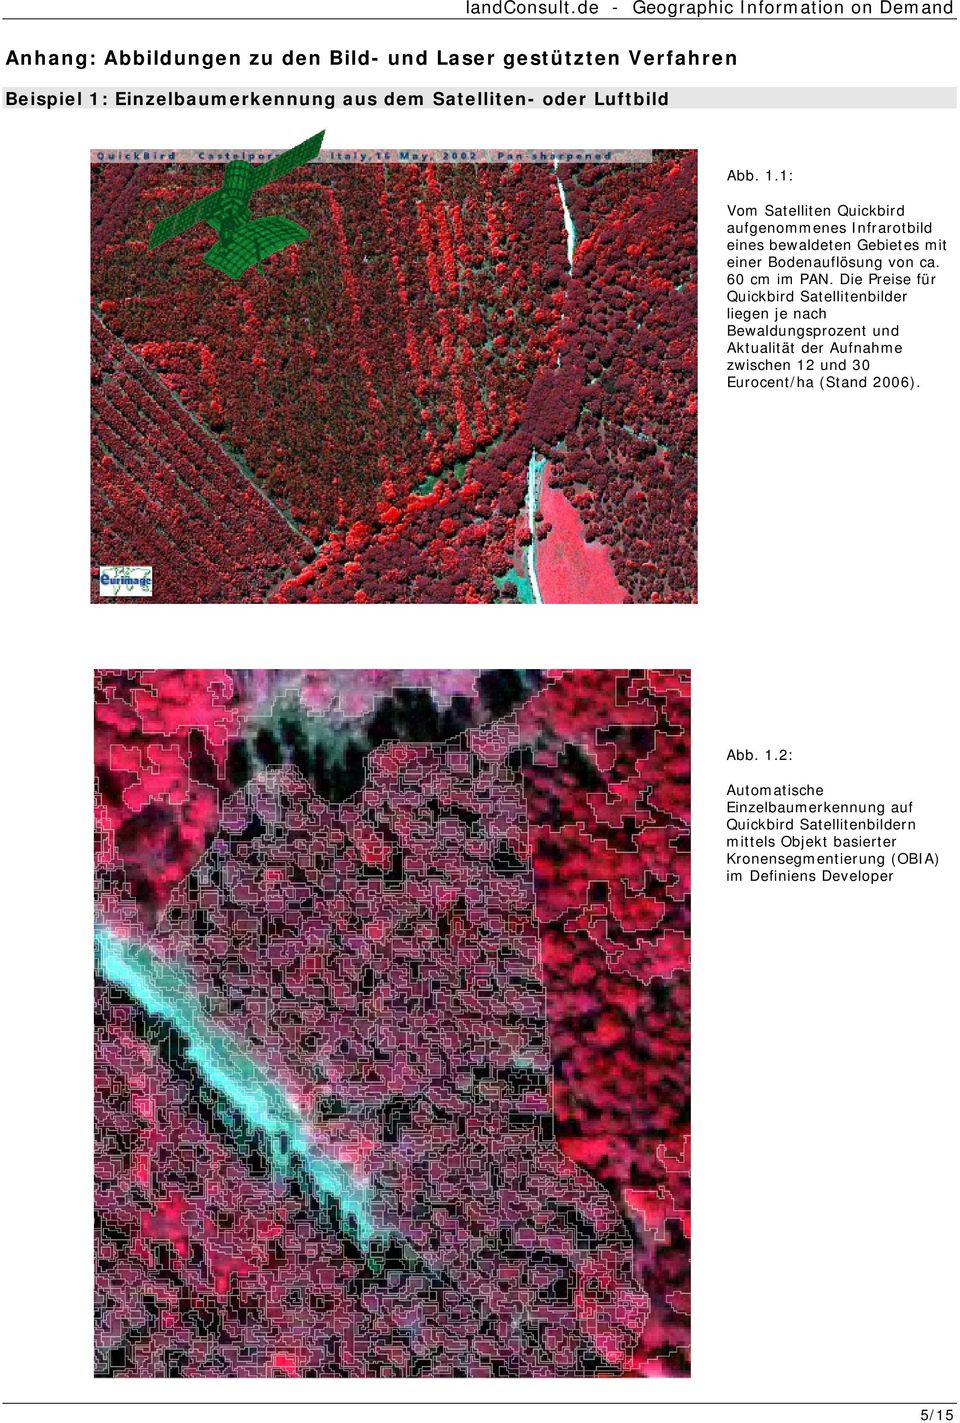 1: Vom Satelliten Quickbird aufgenommenes Infrarotbild eines bewaldeten Gebietes mit einer Bodenauflösung von ca. 60 cm im PAN.